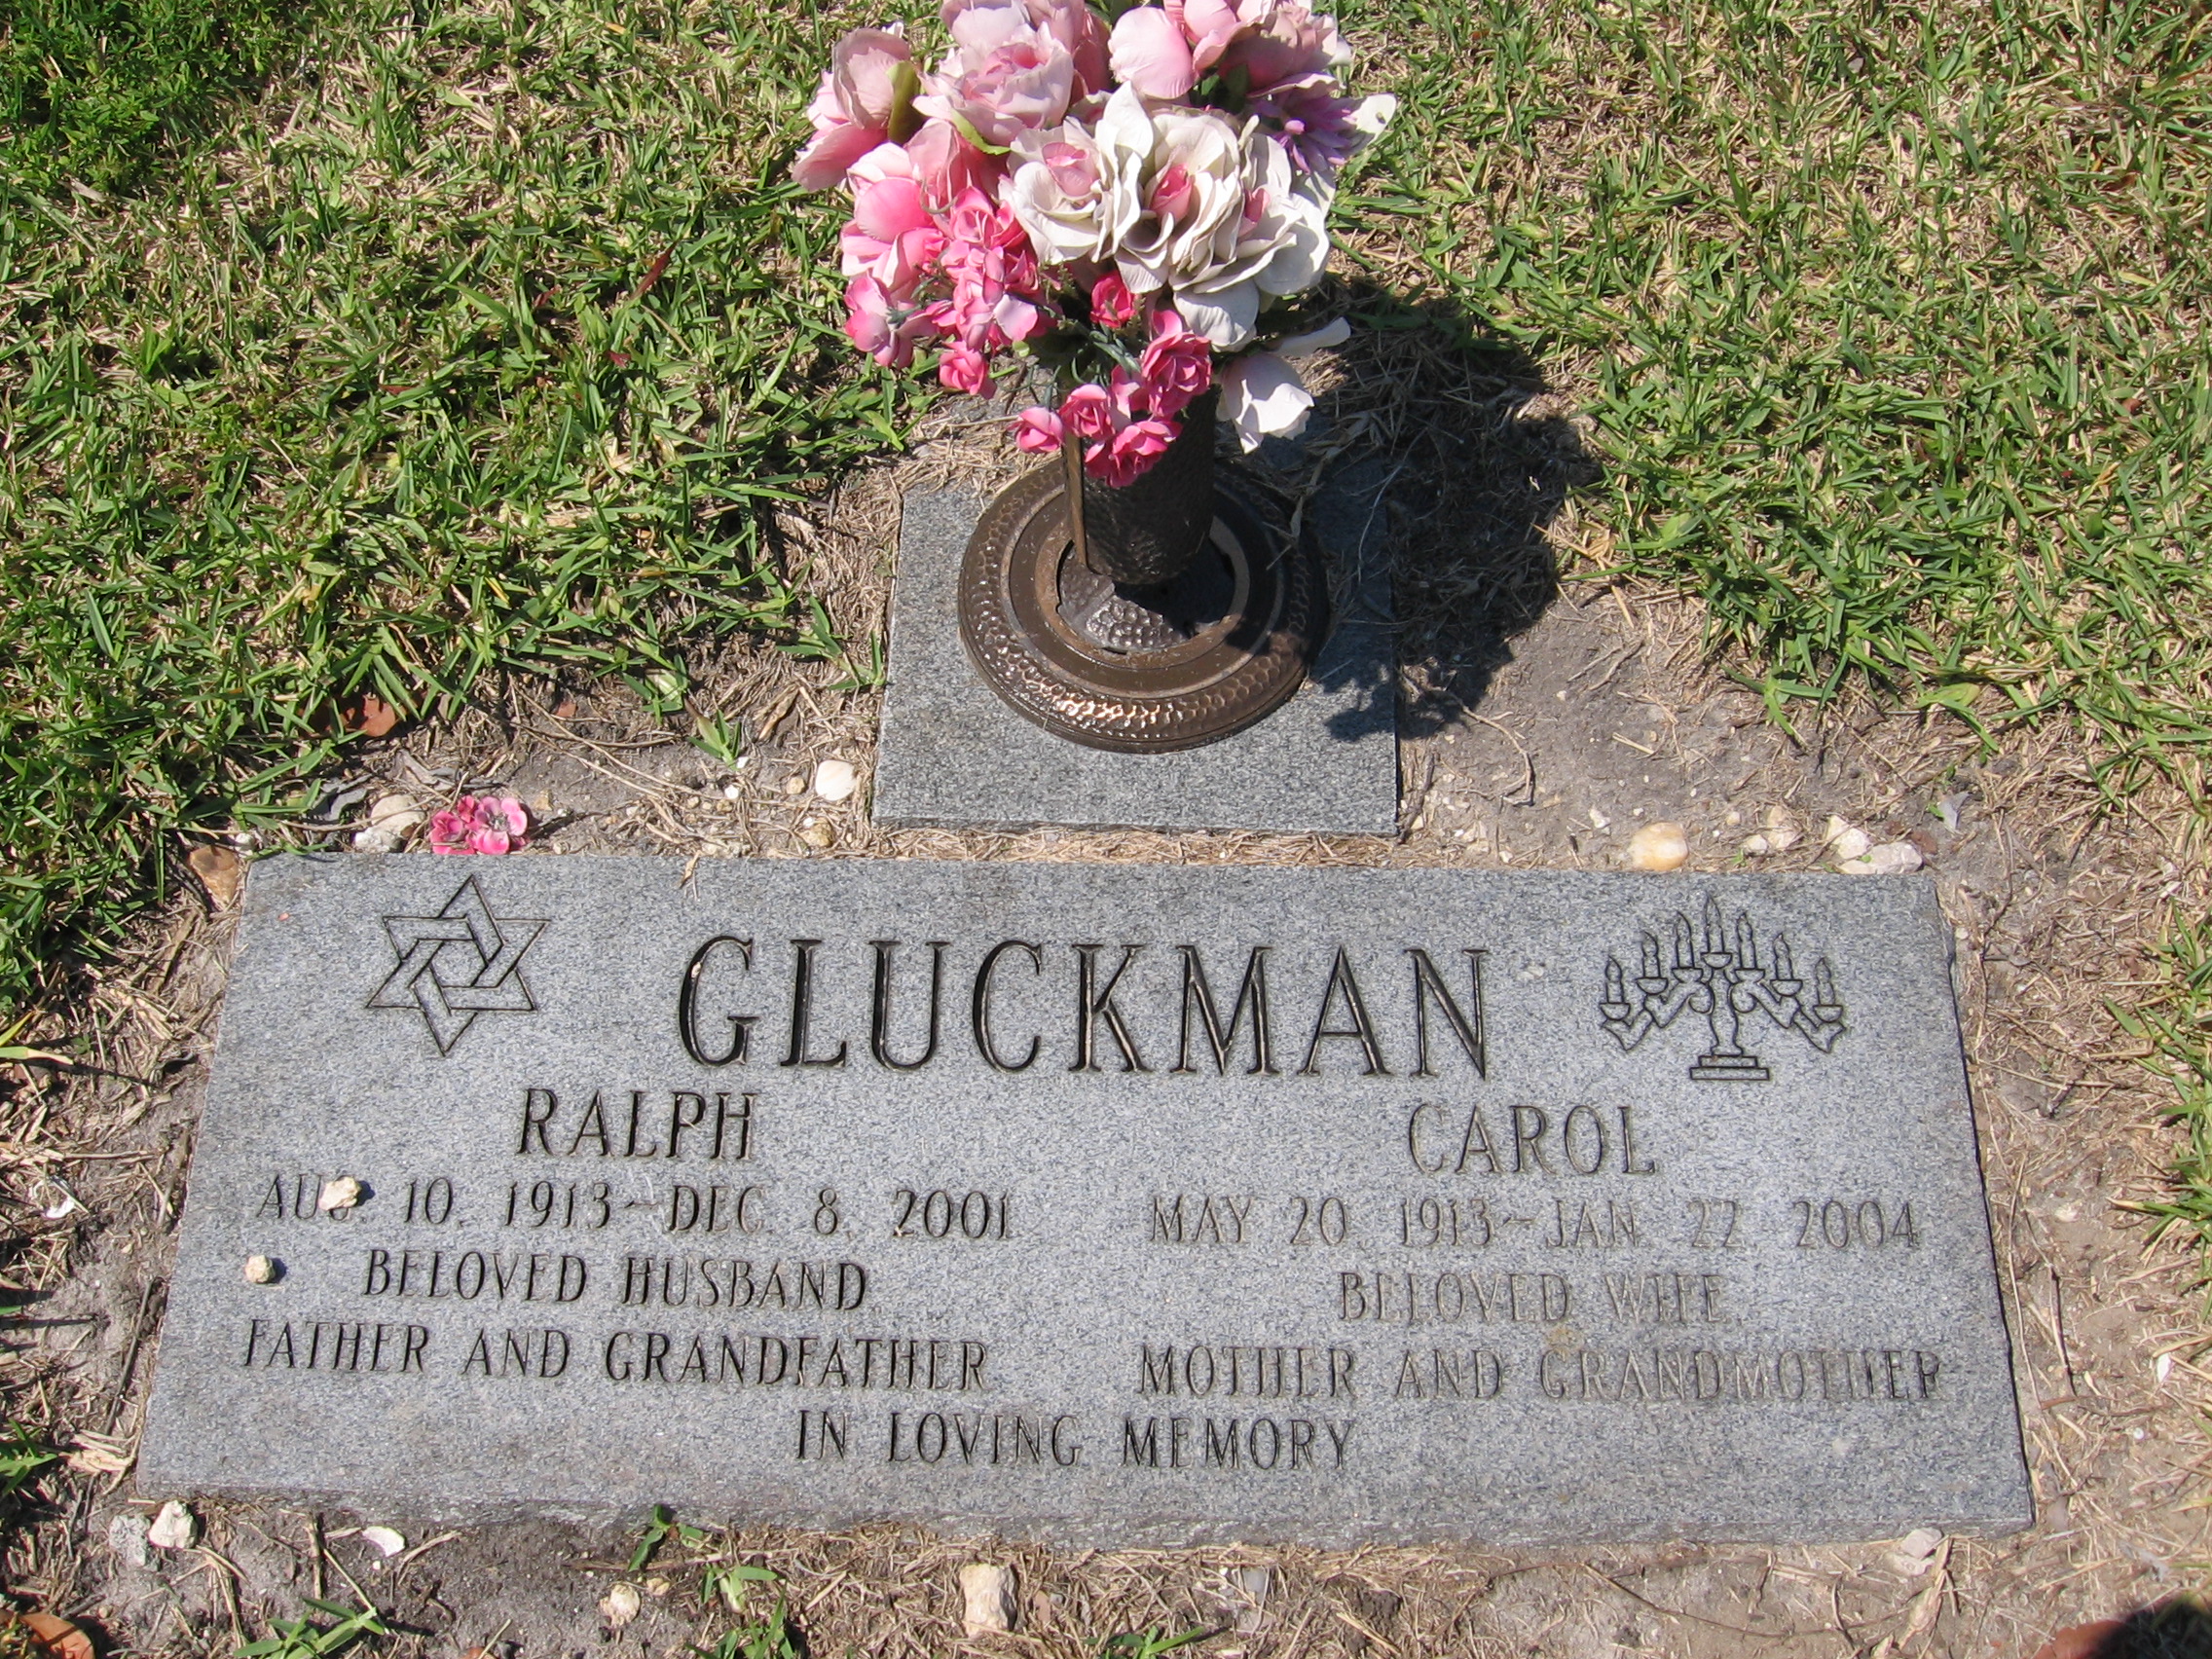 Ralph Gluckman